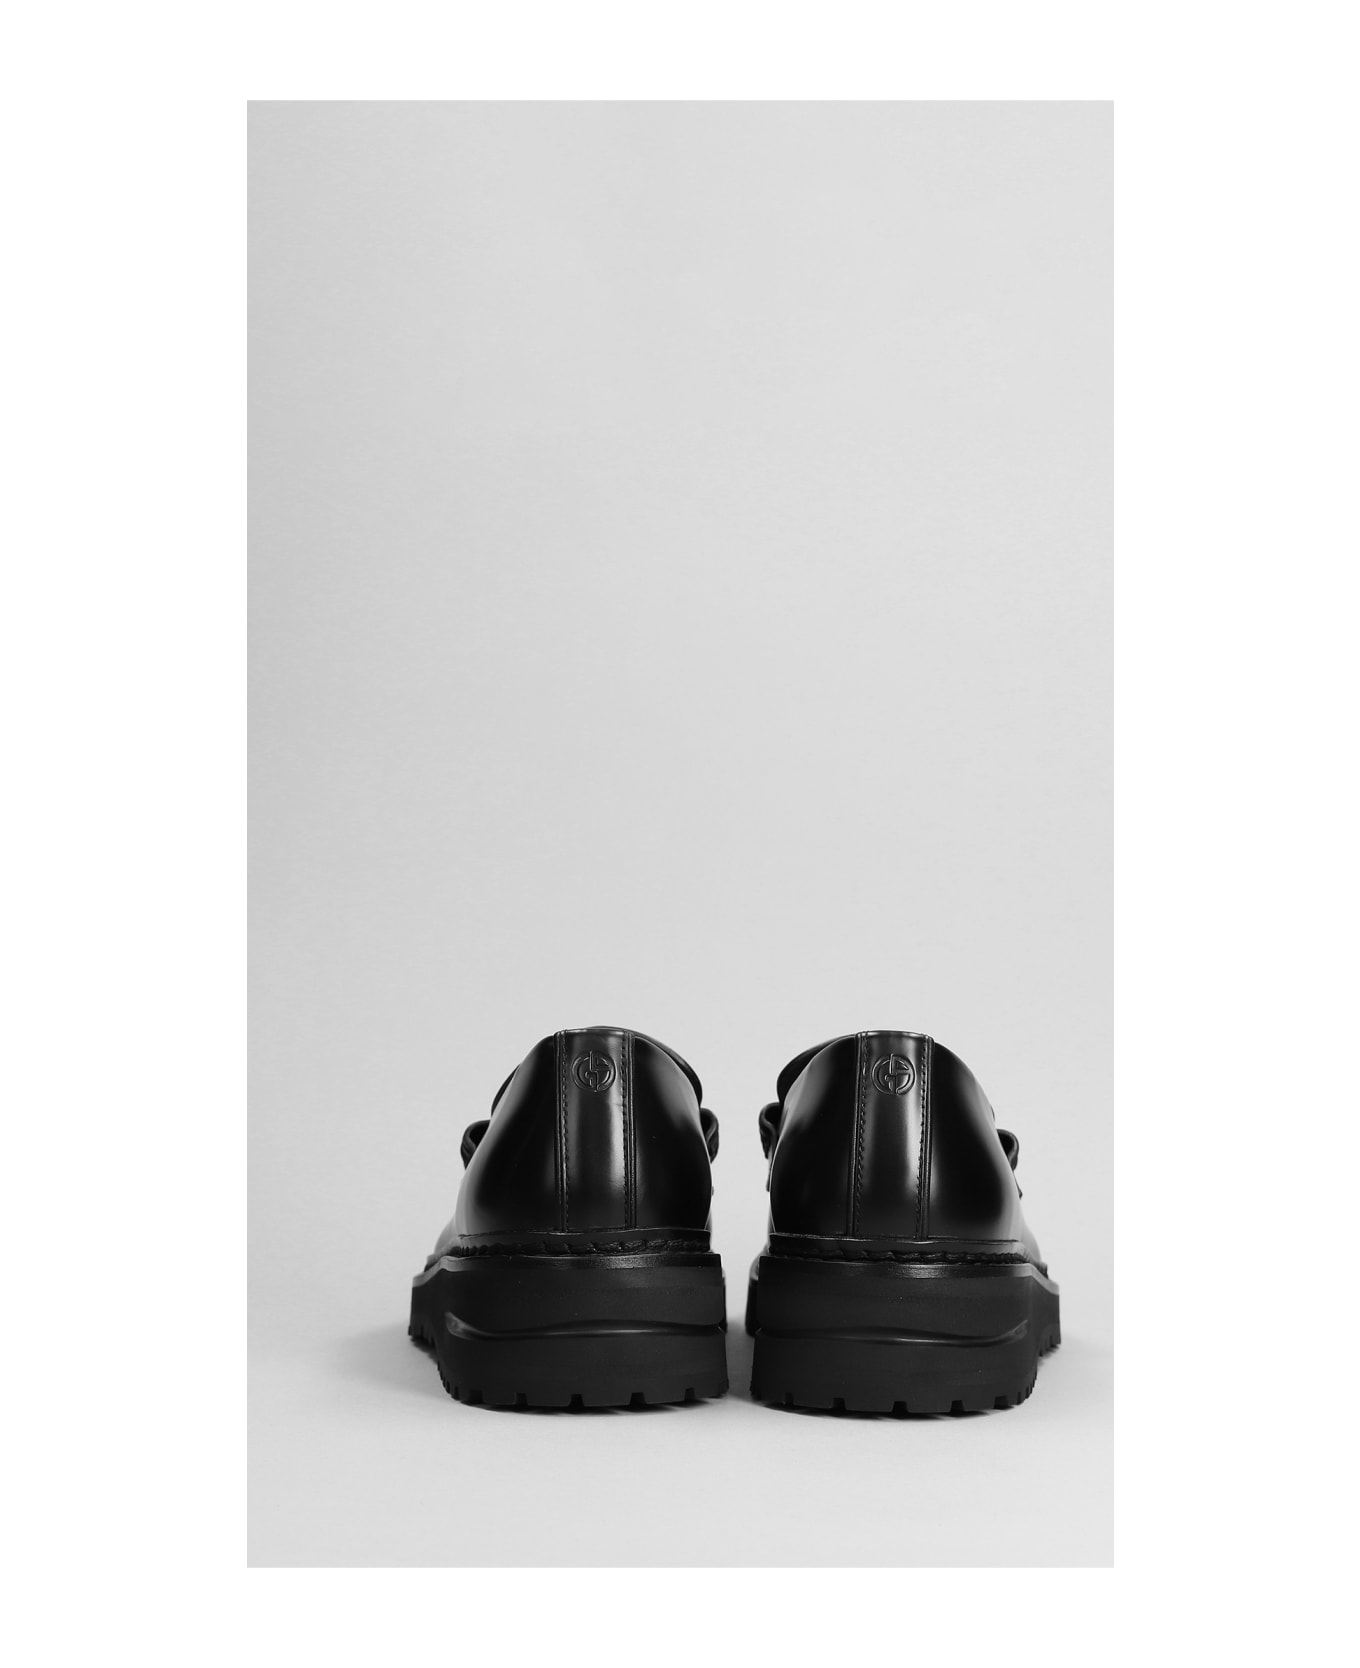 Giorgio Armani Loafers In Black Leather - black